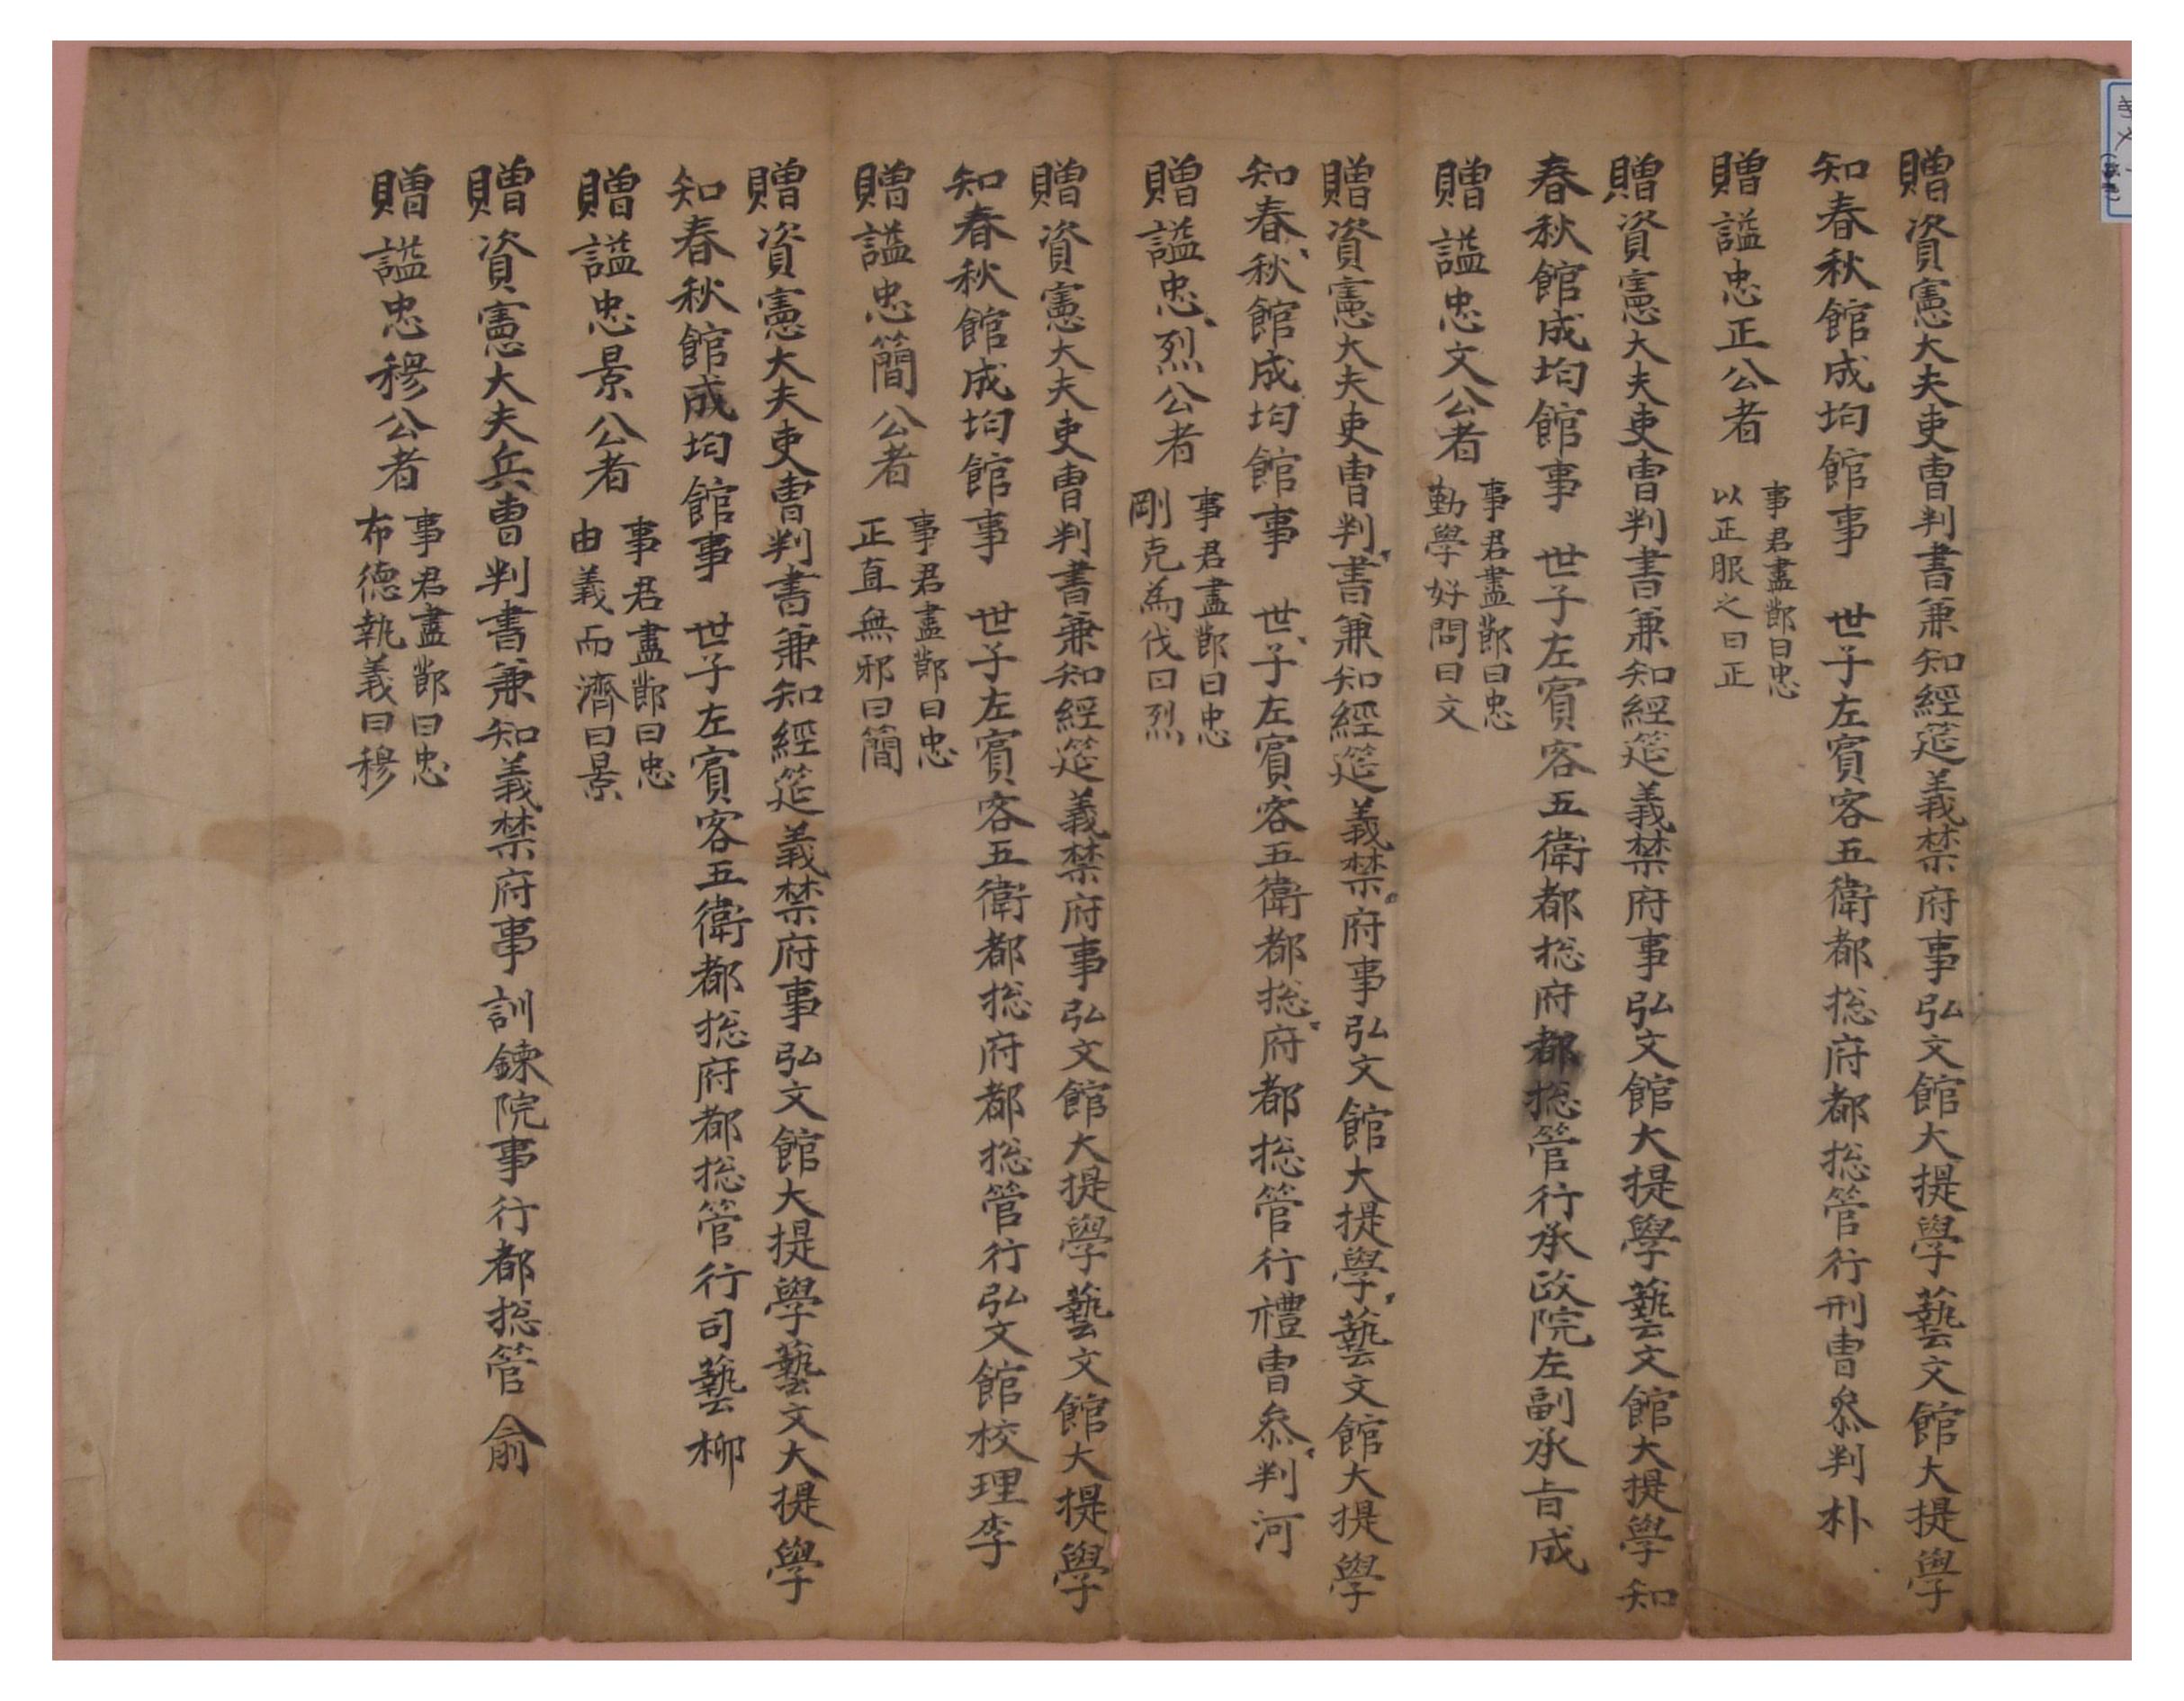 조선시대 사육신의 복권된 관직과 시호를 기록한 글